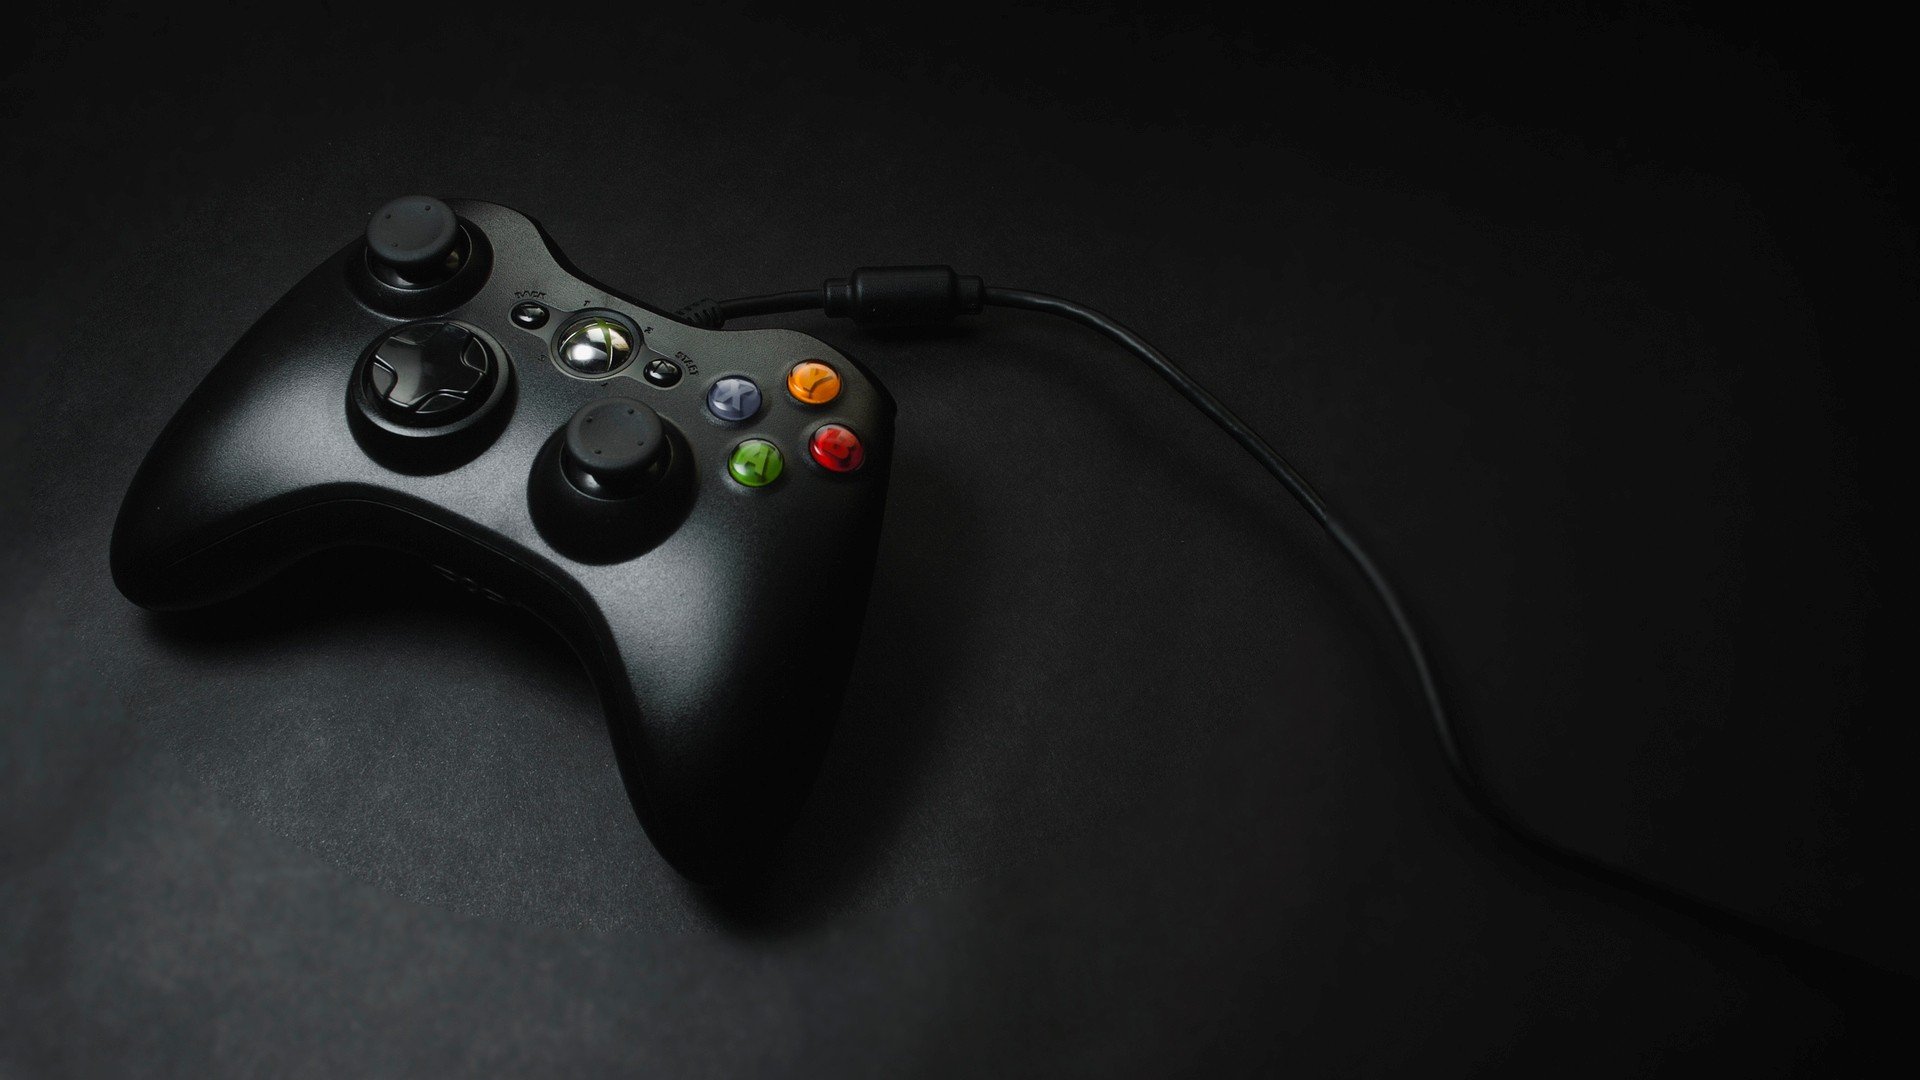 Xbox Controller Wallpaper - Với hình nền Xbox Controller, bạn sẽ cảm thấy như mình đang ngồi trong phòng game của mình. Với những chi tiết đầy màu sắc và sống động, hình nền này sẽ làm đẹp hơn cho màn hình của bạn và khiến bạn nhớ đến những kỷ niệm tuyệt vời với Xbox. Xem hình ảnh liên quan để biết thêm chi tiết.